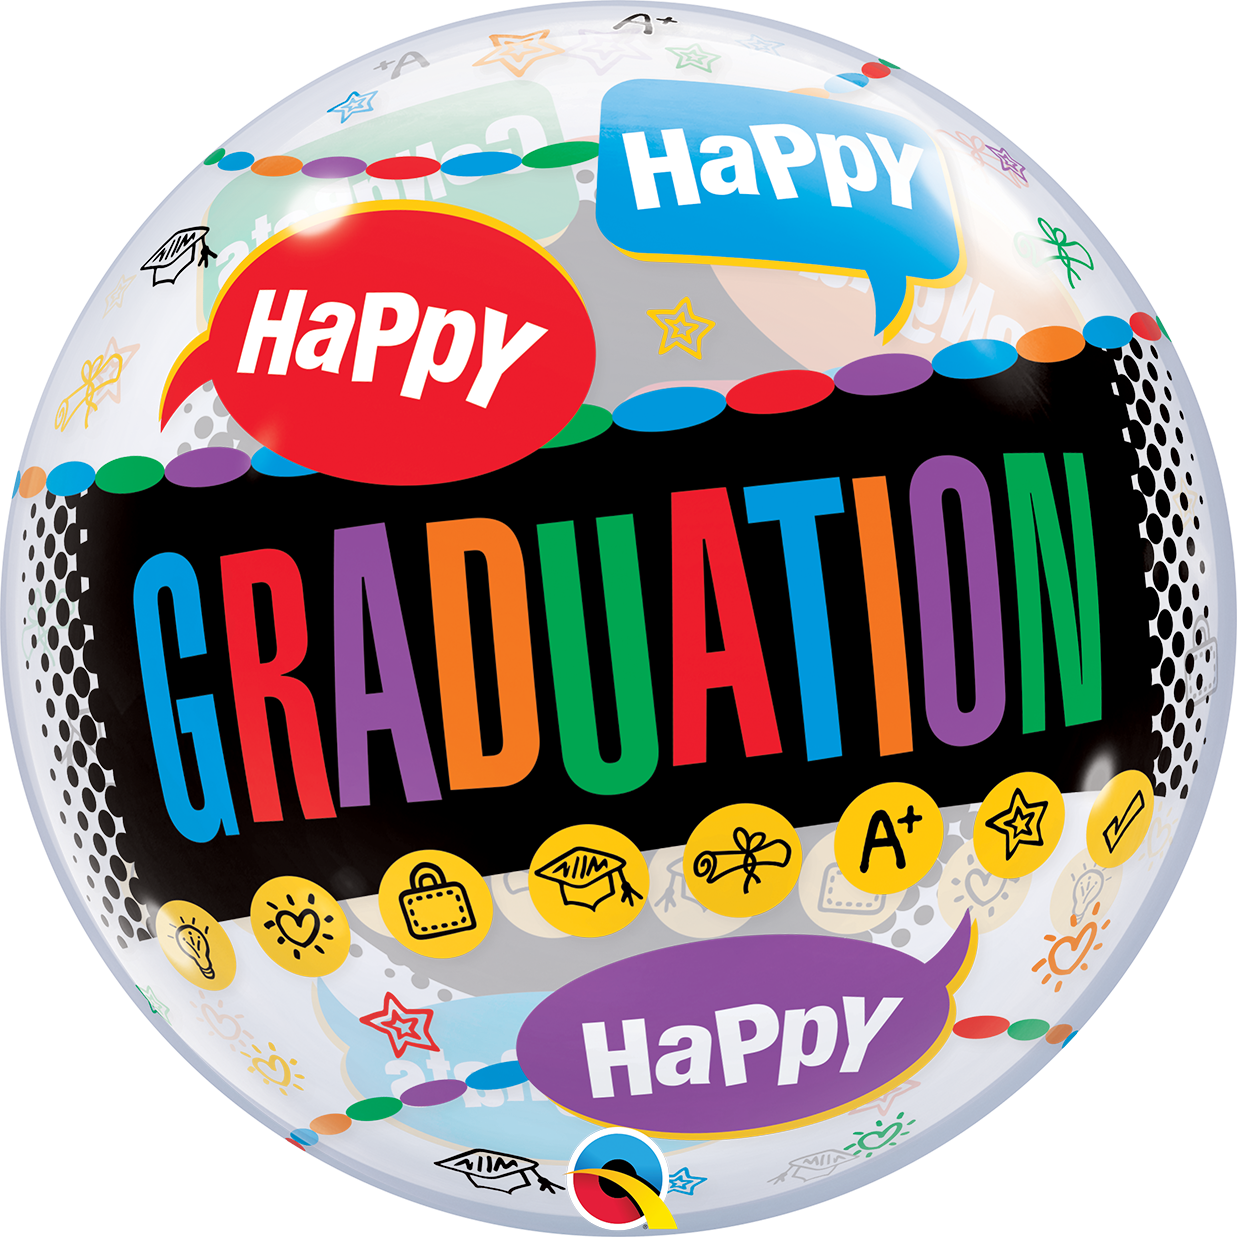 Happy Graduation - Congrats Grad